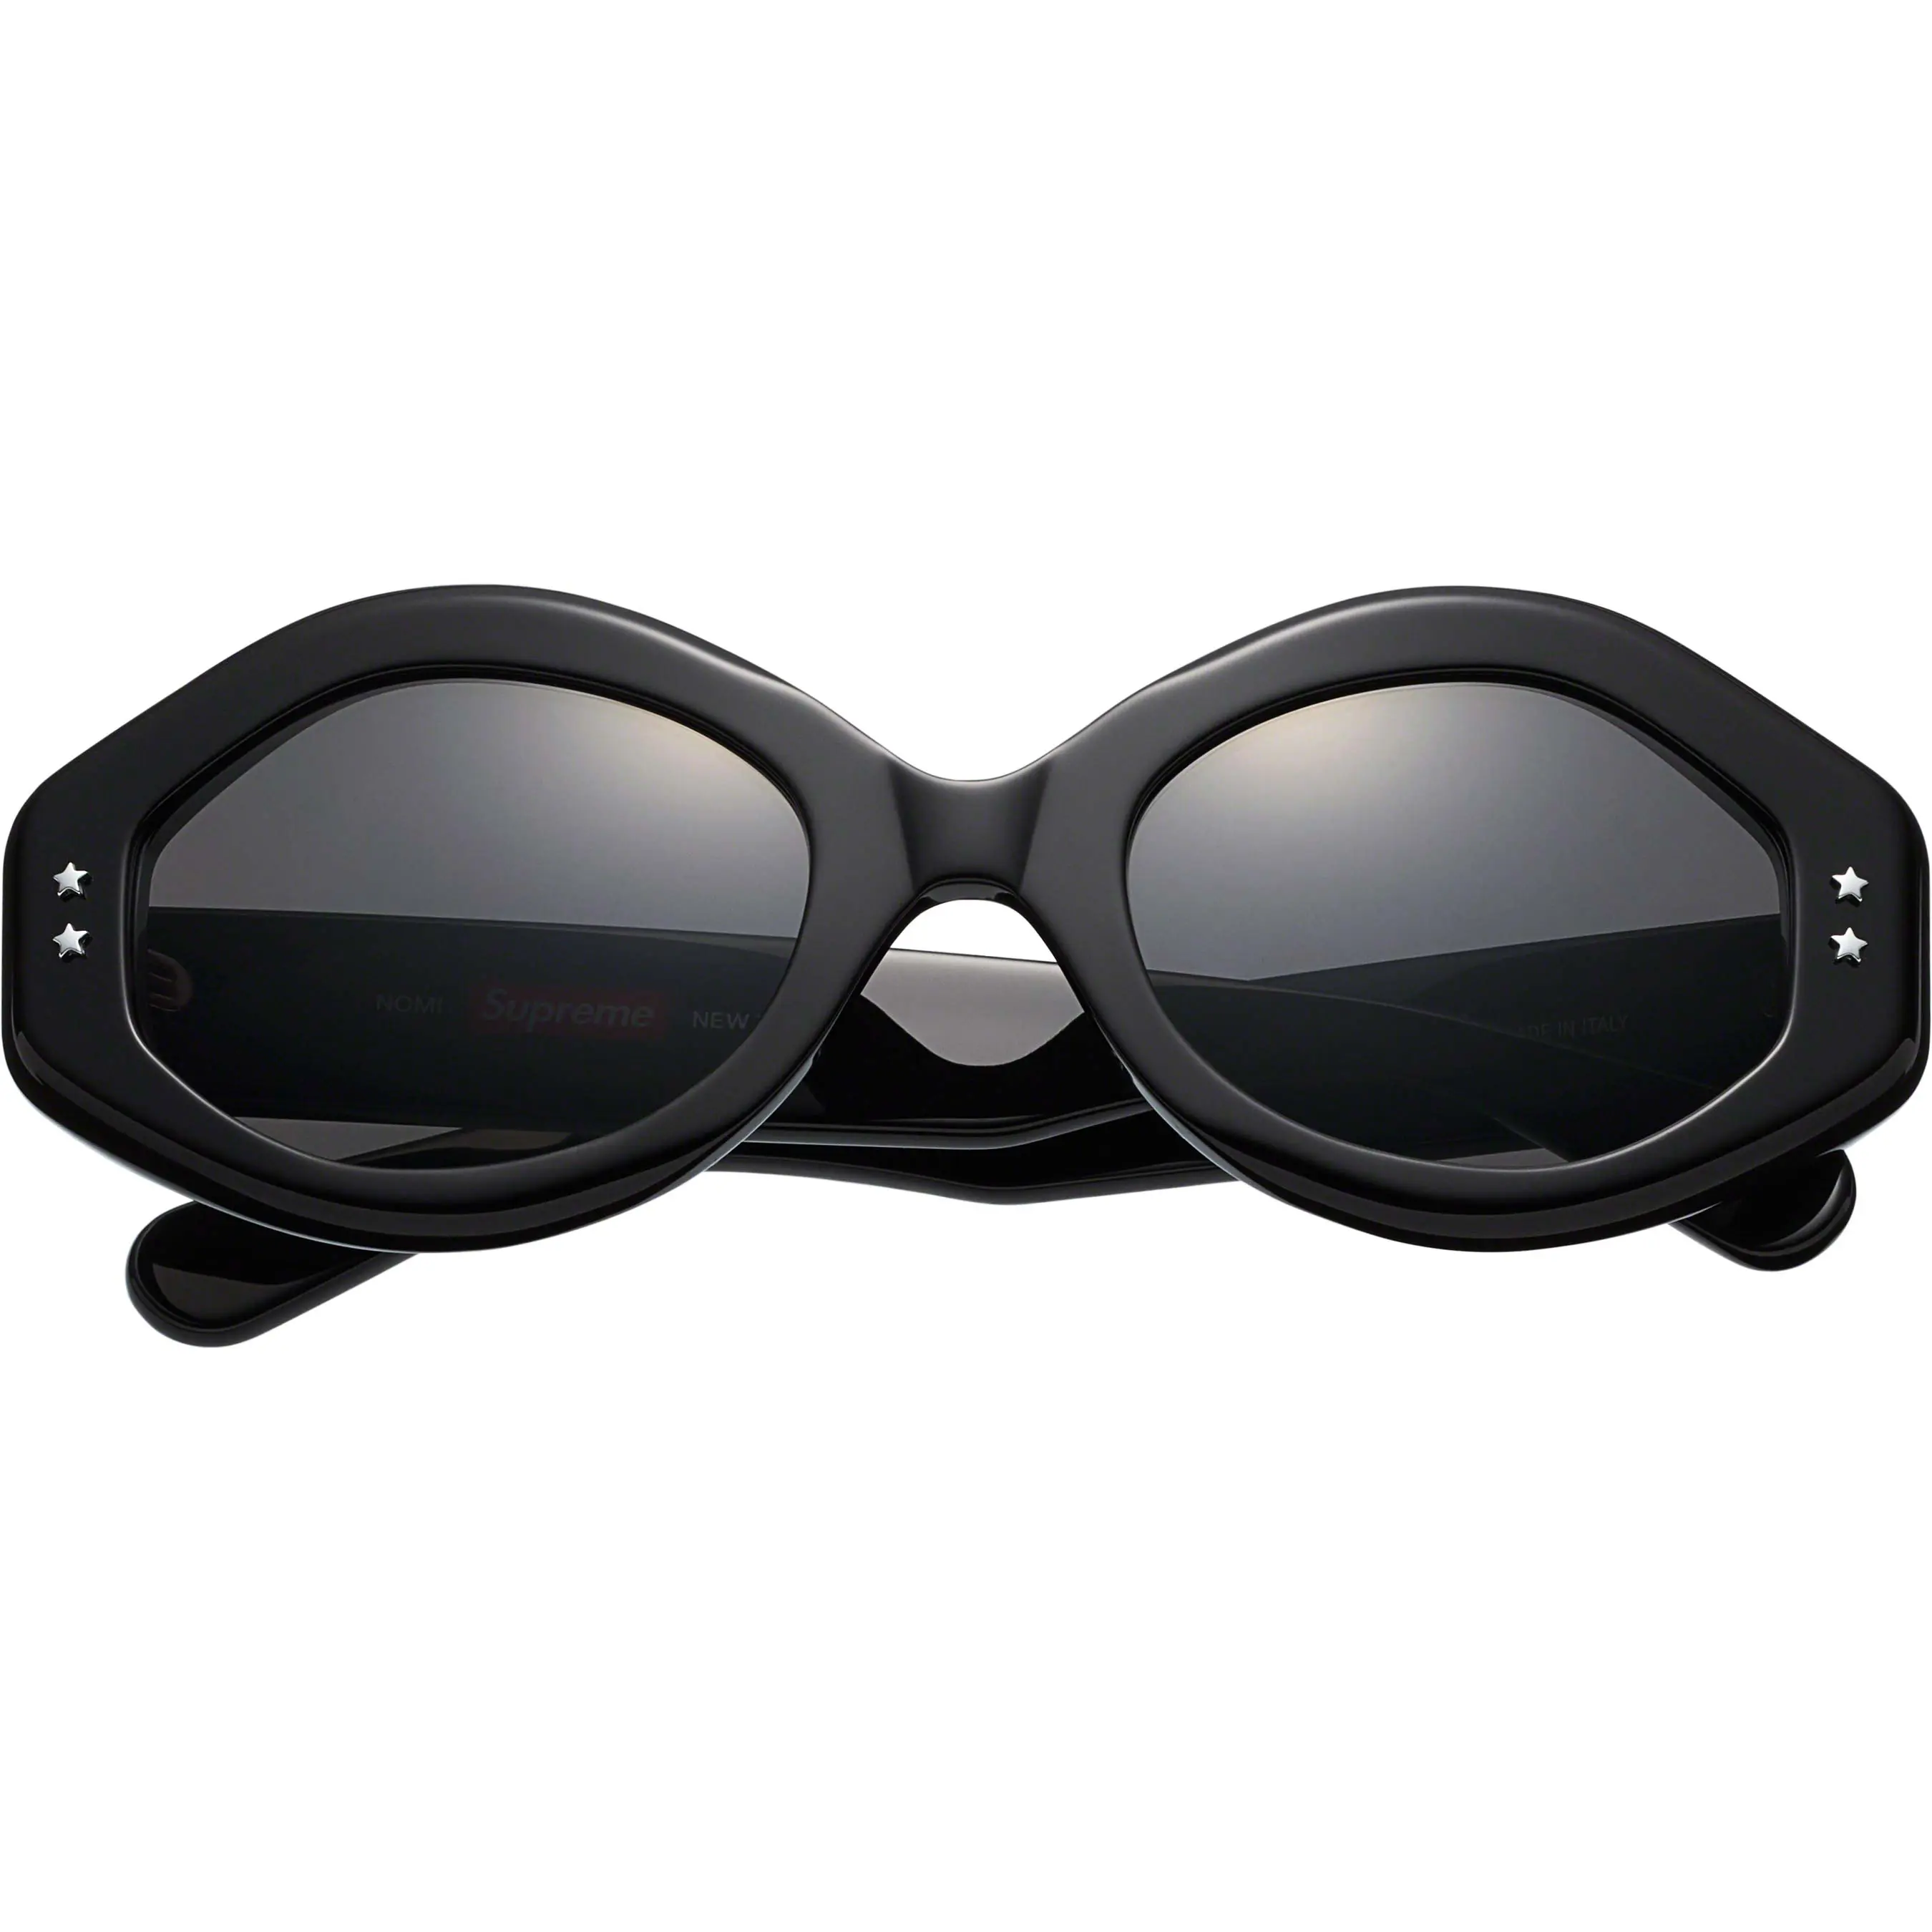 Supreme Nomi Sunglasses